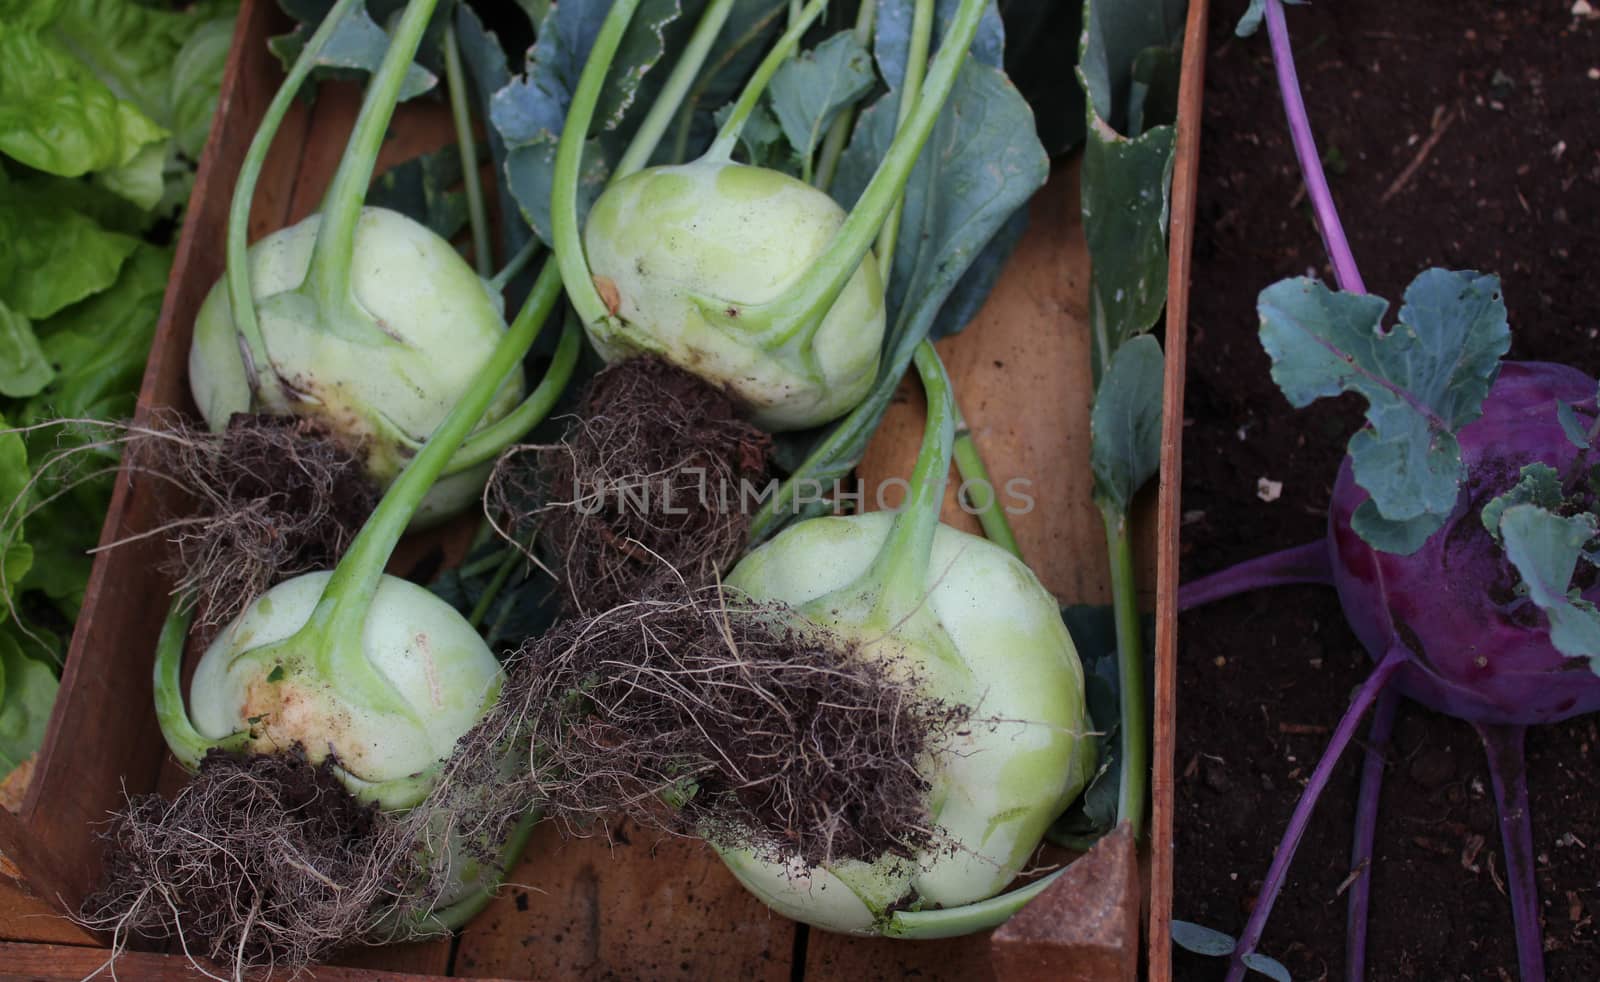 cabbage turnip in the garden by martina_unbehauen